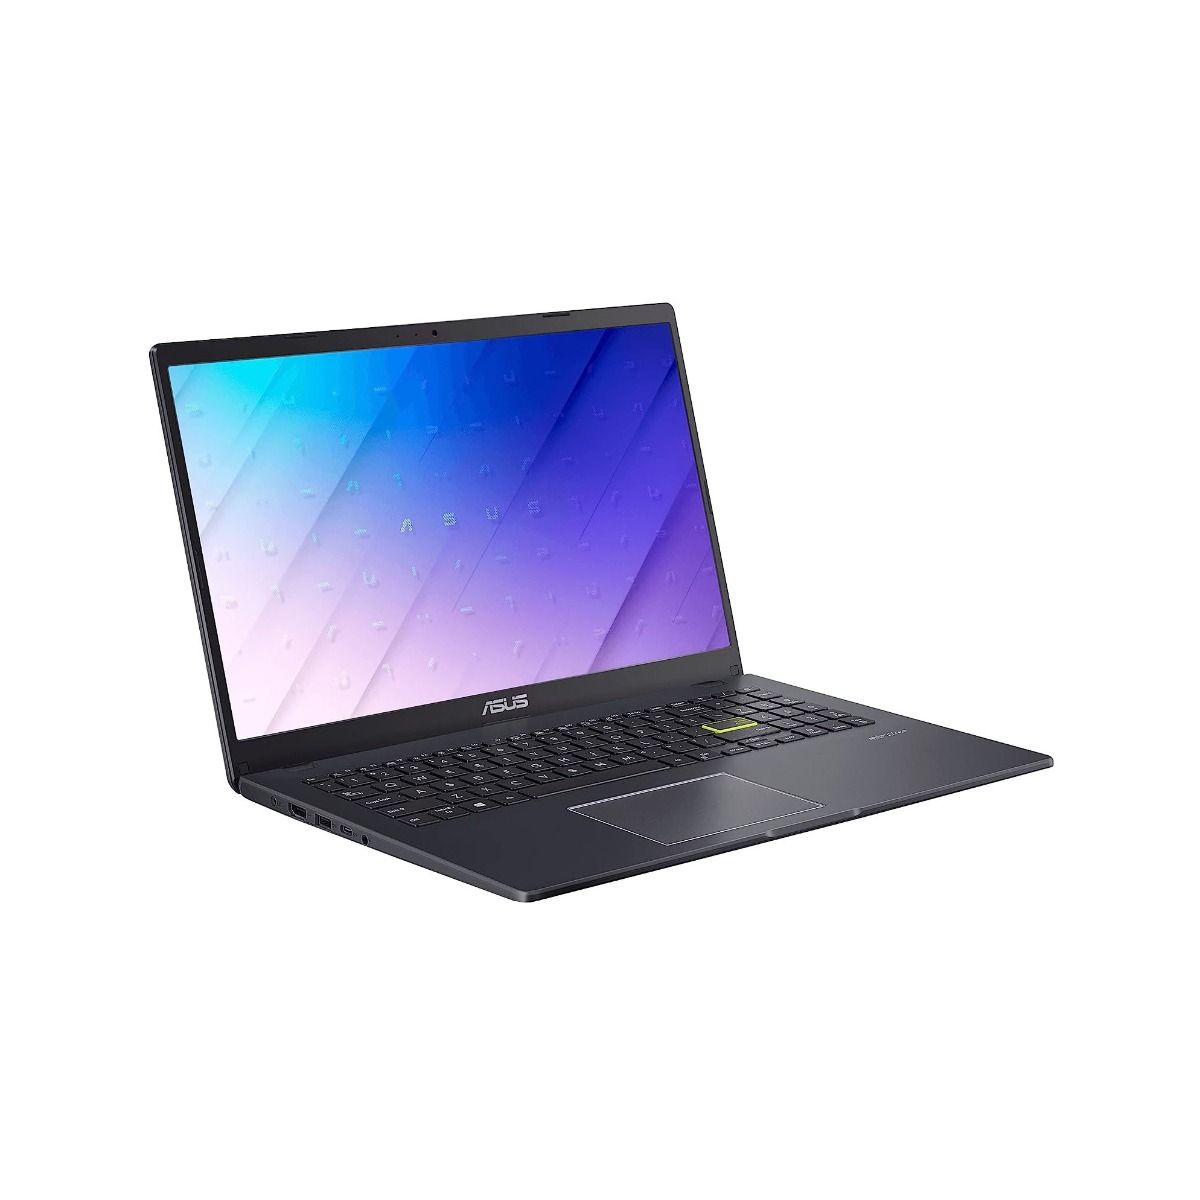 ASUS E510 15.6" Laptop Intel Celeron N4020 4GB RAM 128GB eMMC Black